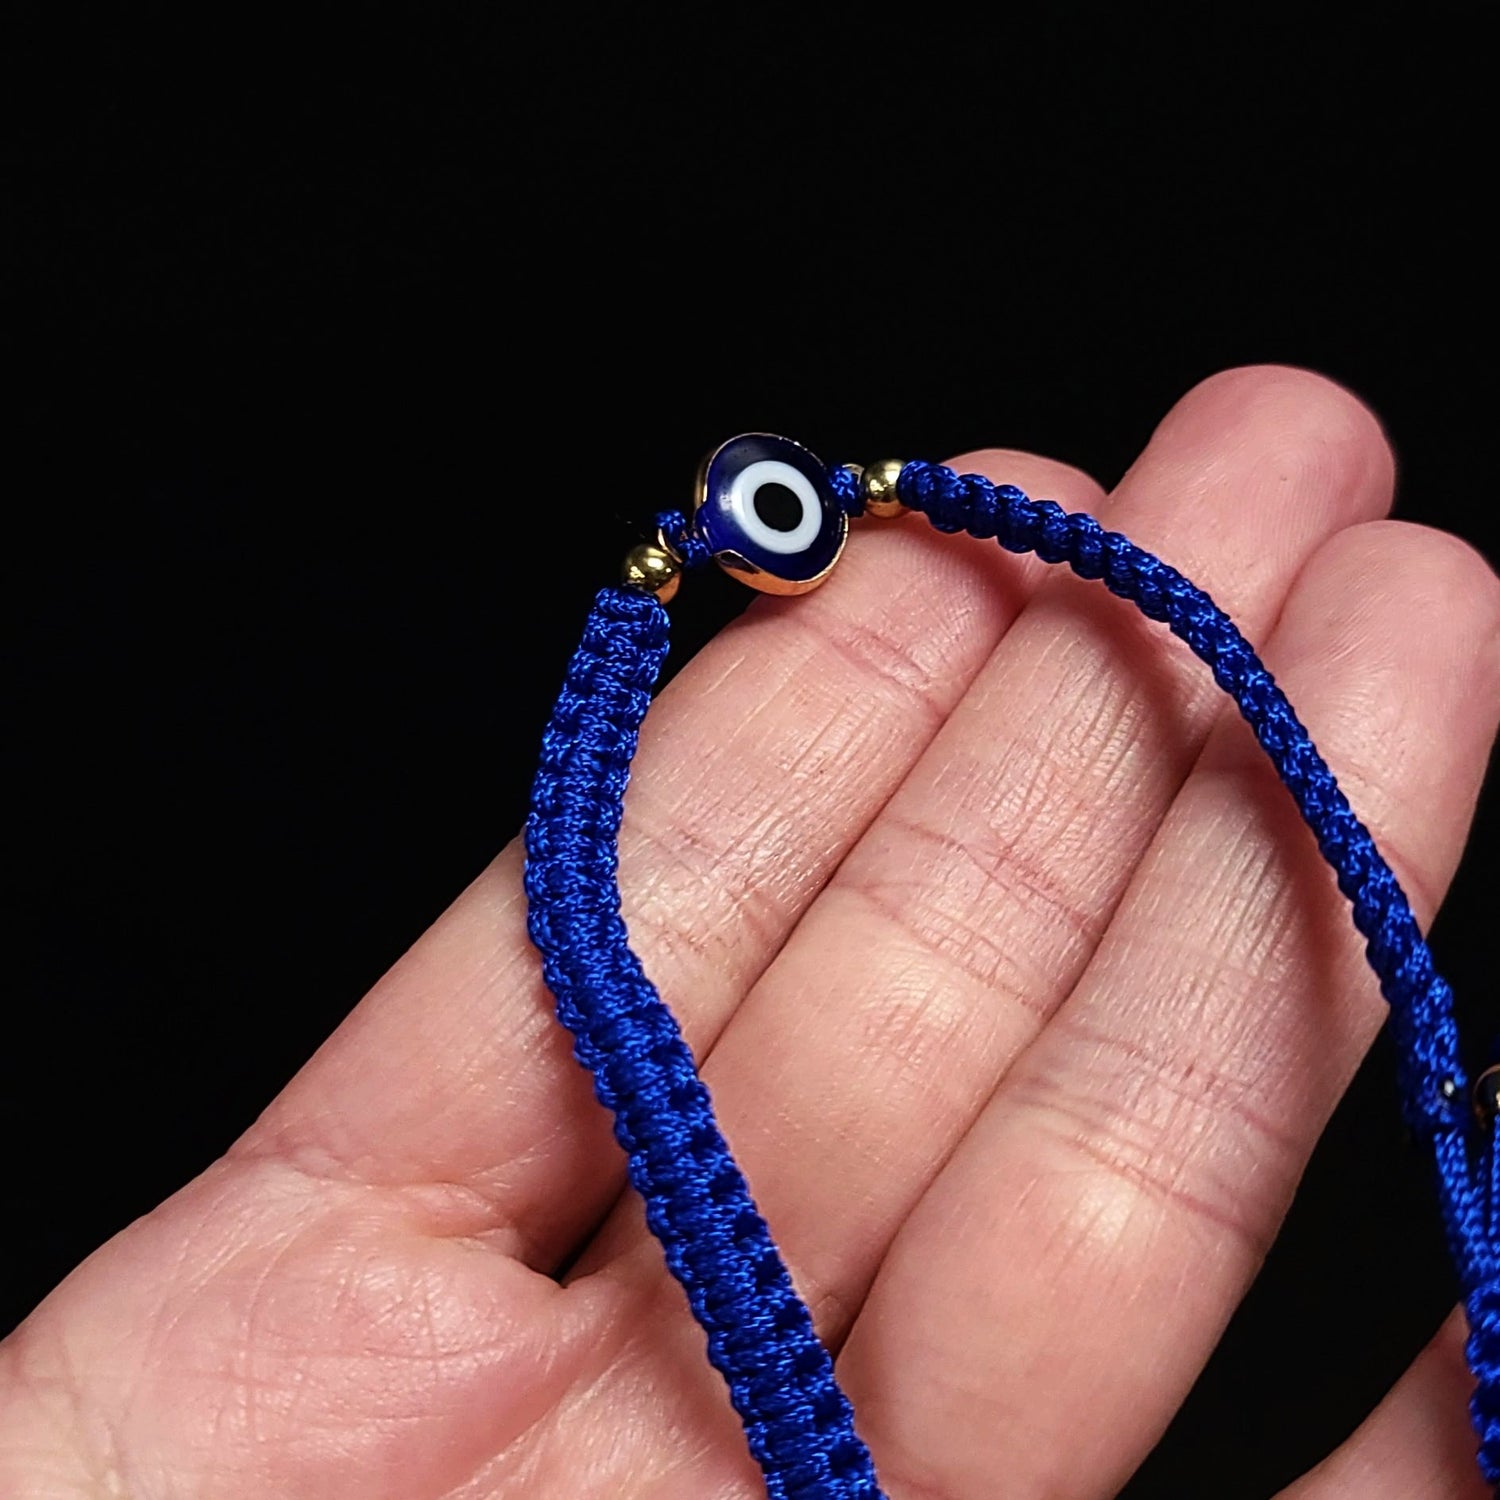 Blue Evil Eye Bracelet Blue String Bracelet - Elevated Metaphysical